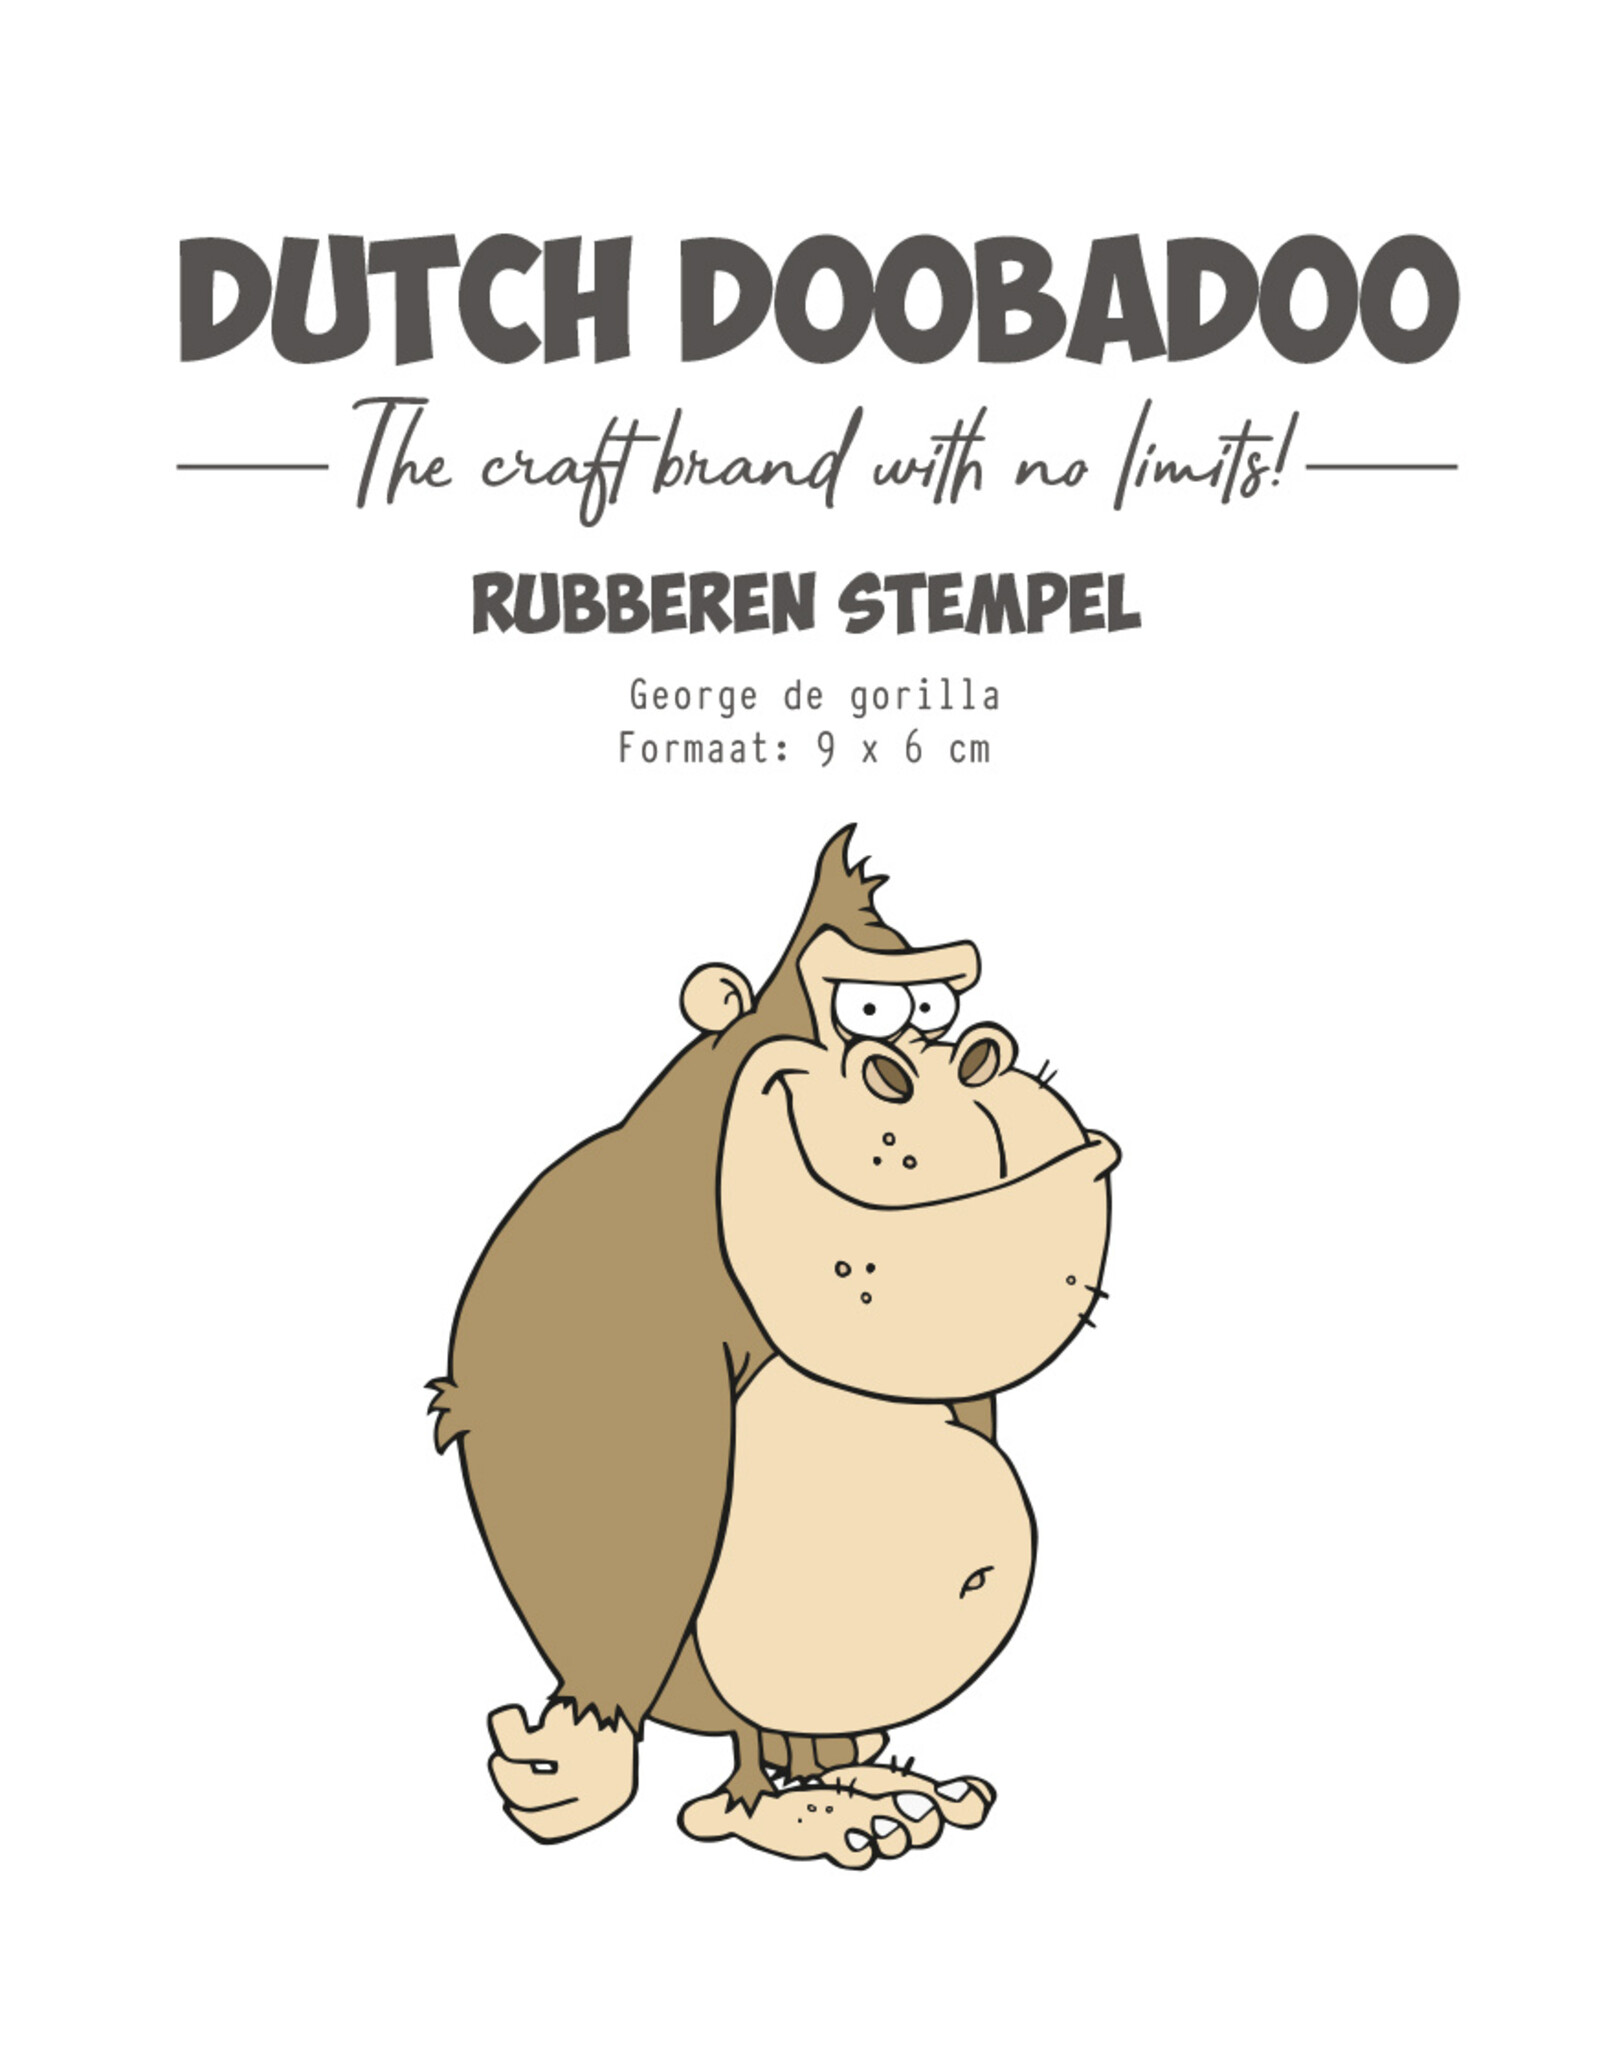 Dutch Doobadoo DDBD Rubber stempel George de Gorilla